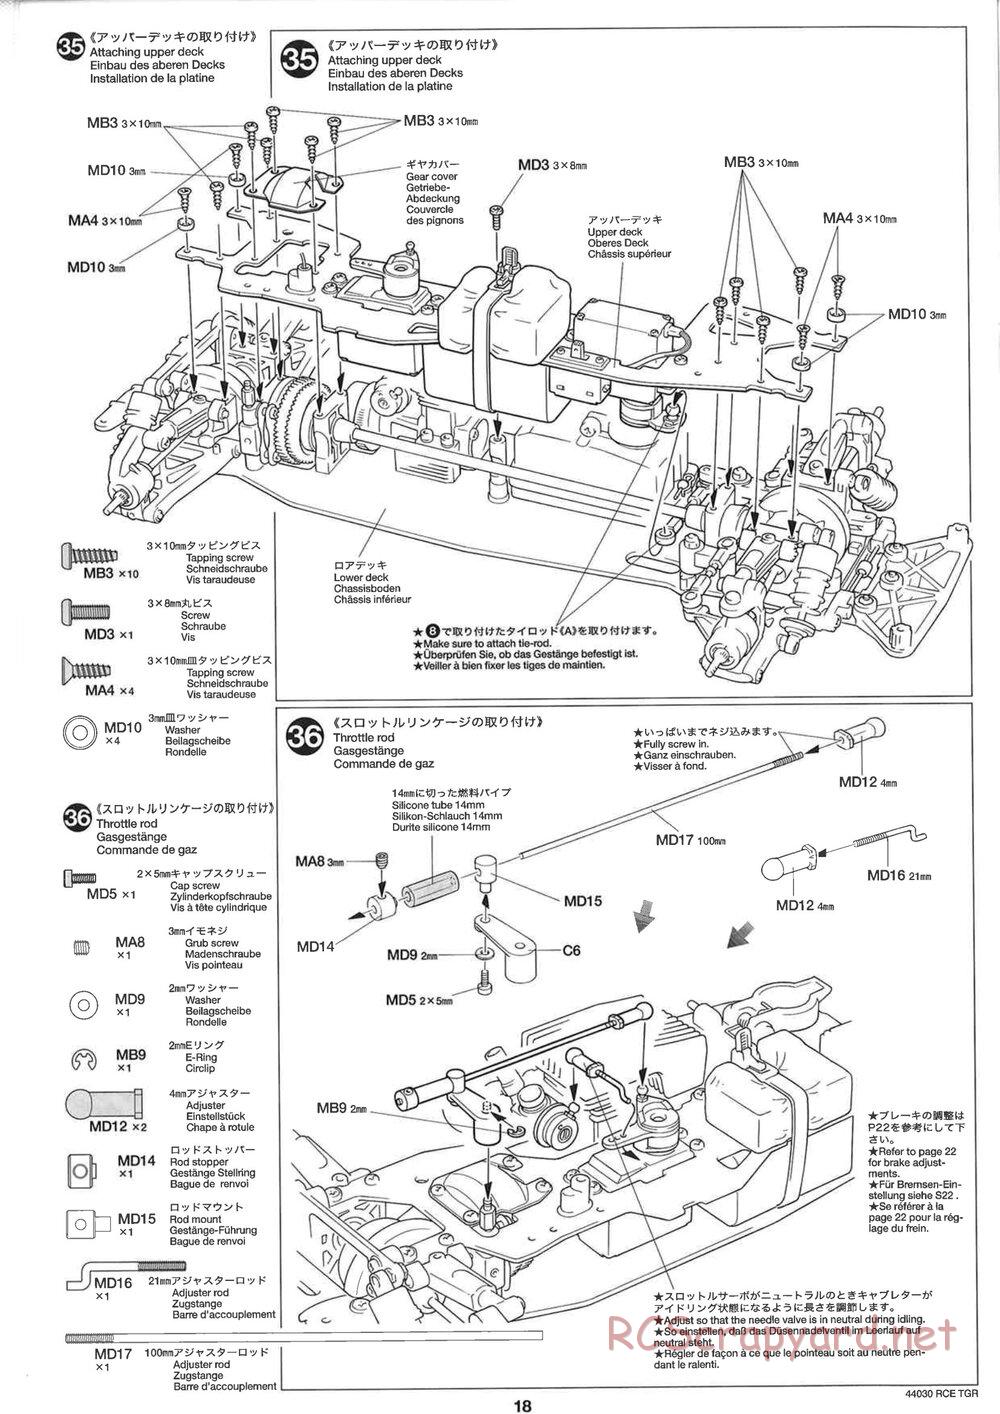 Tamiya - TGR Chassis - Manual - Page 18